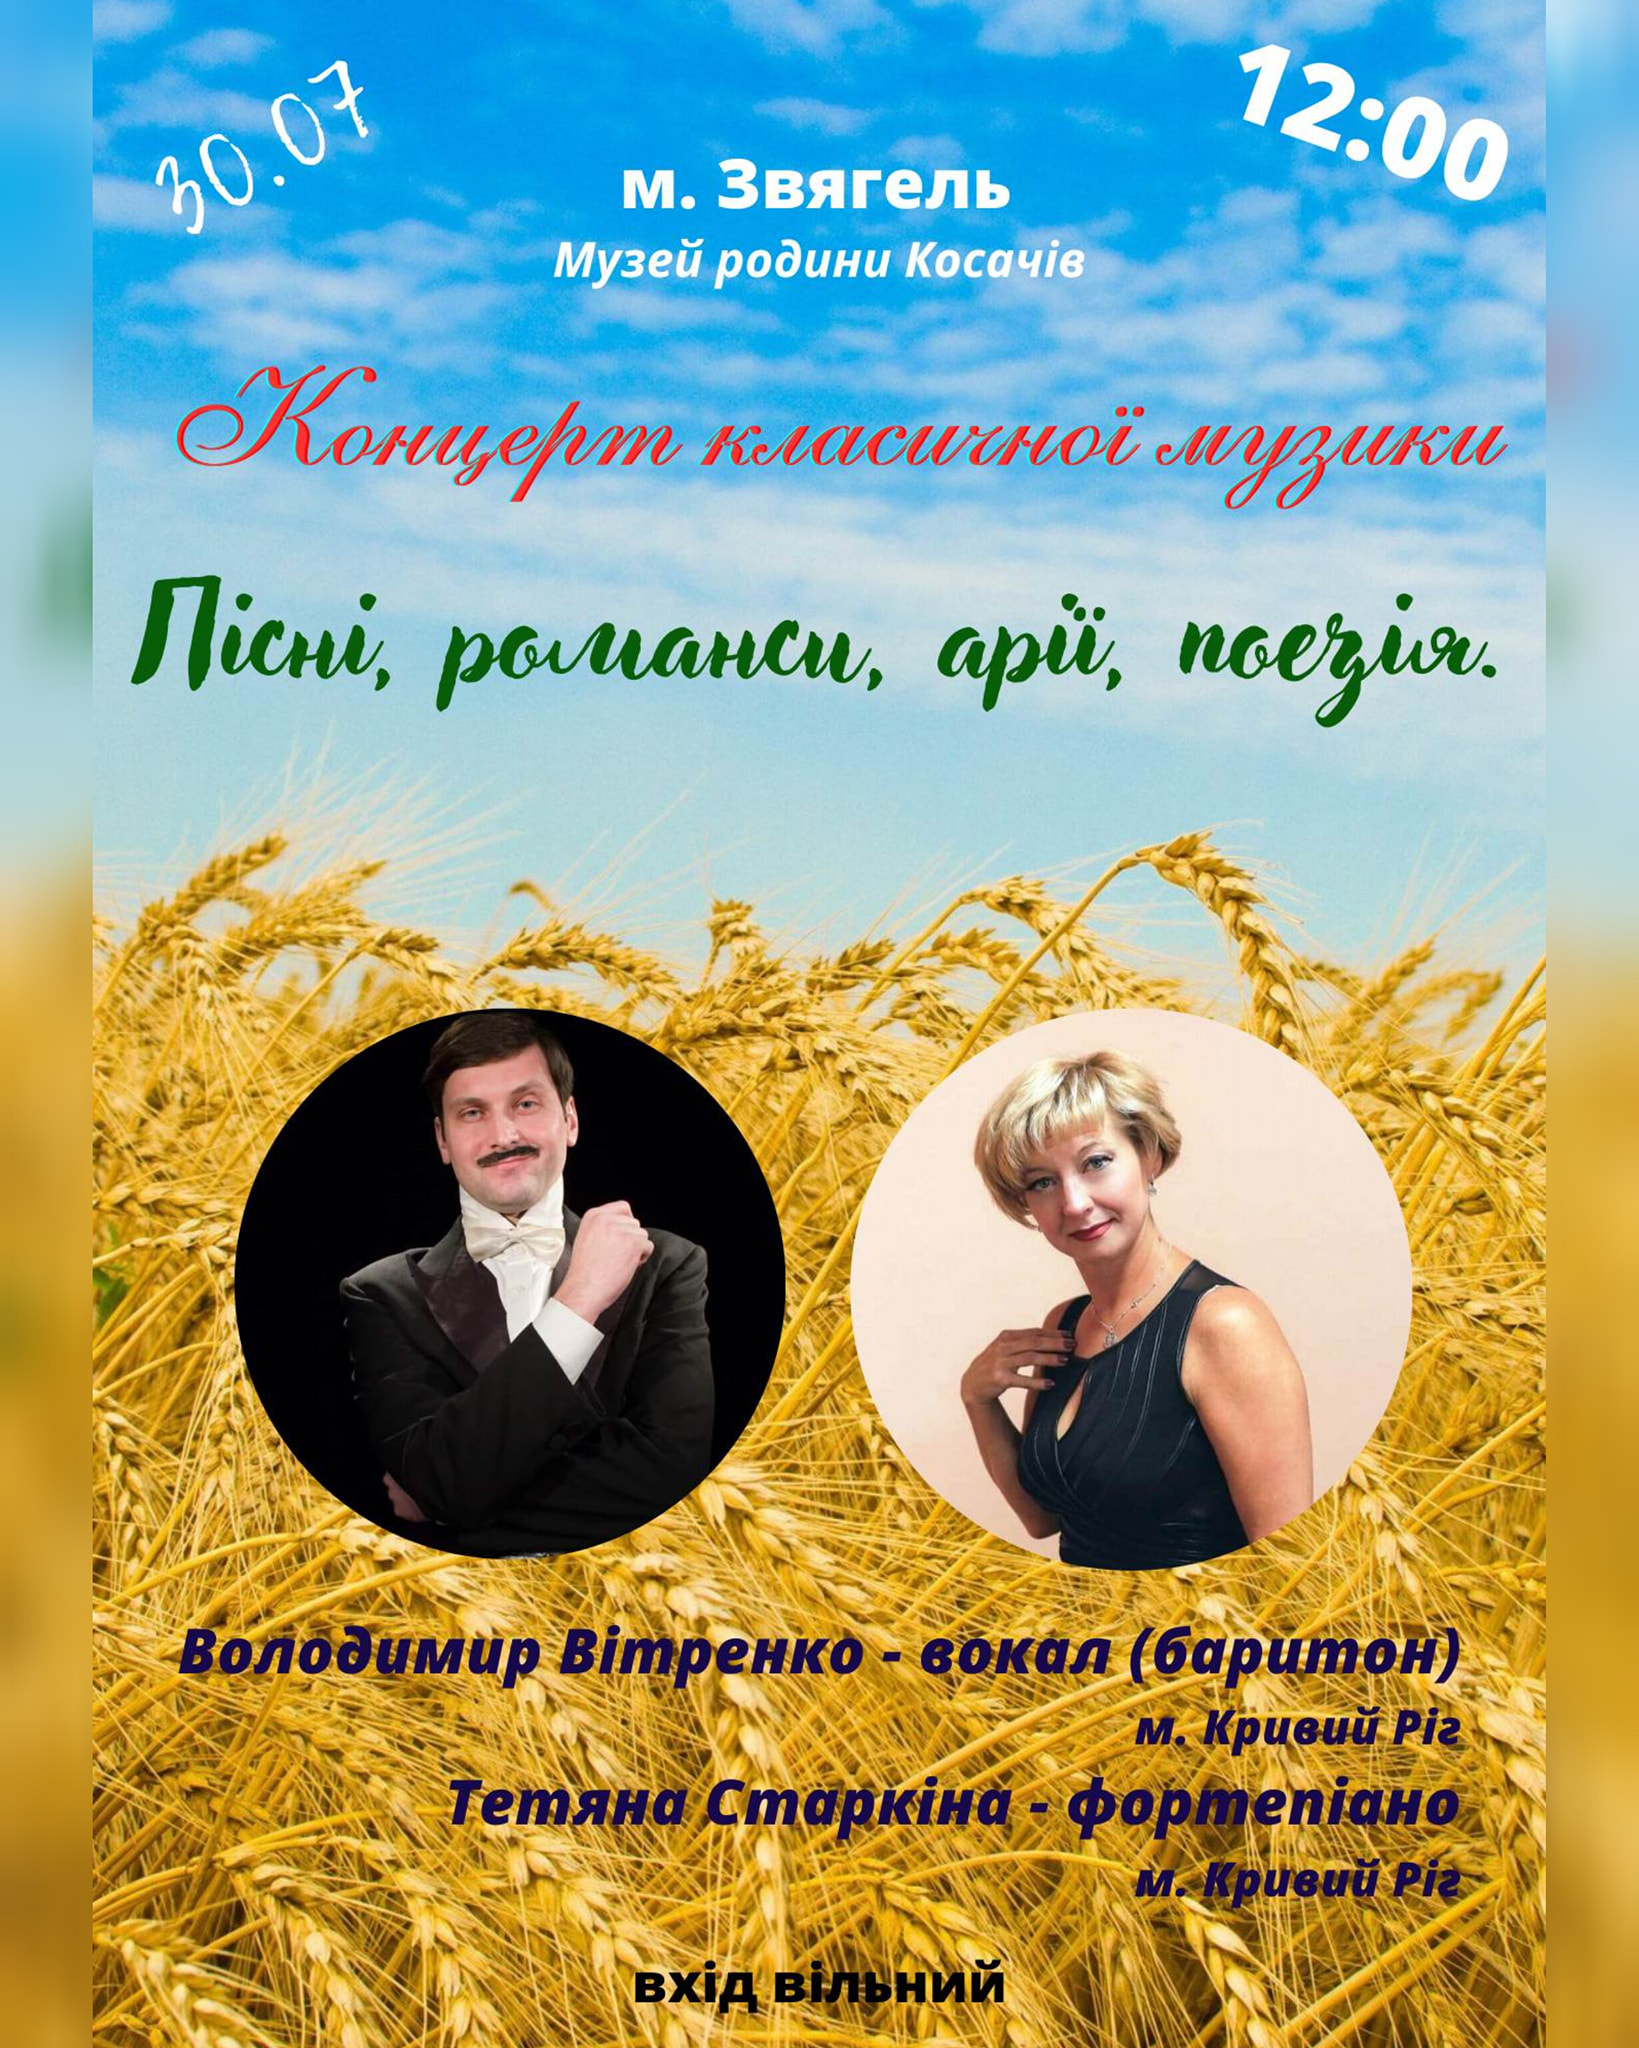 У Музеї родини Косачів-Драгоманових відбудеться концерт класичної музики “Пісні, романси, арії, поезія”